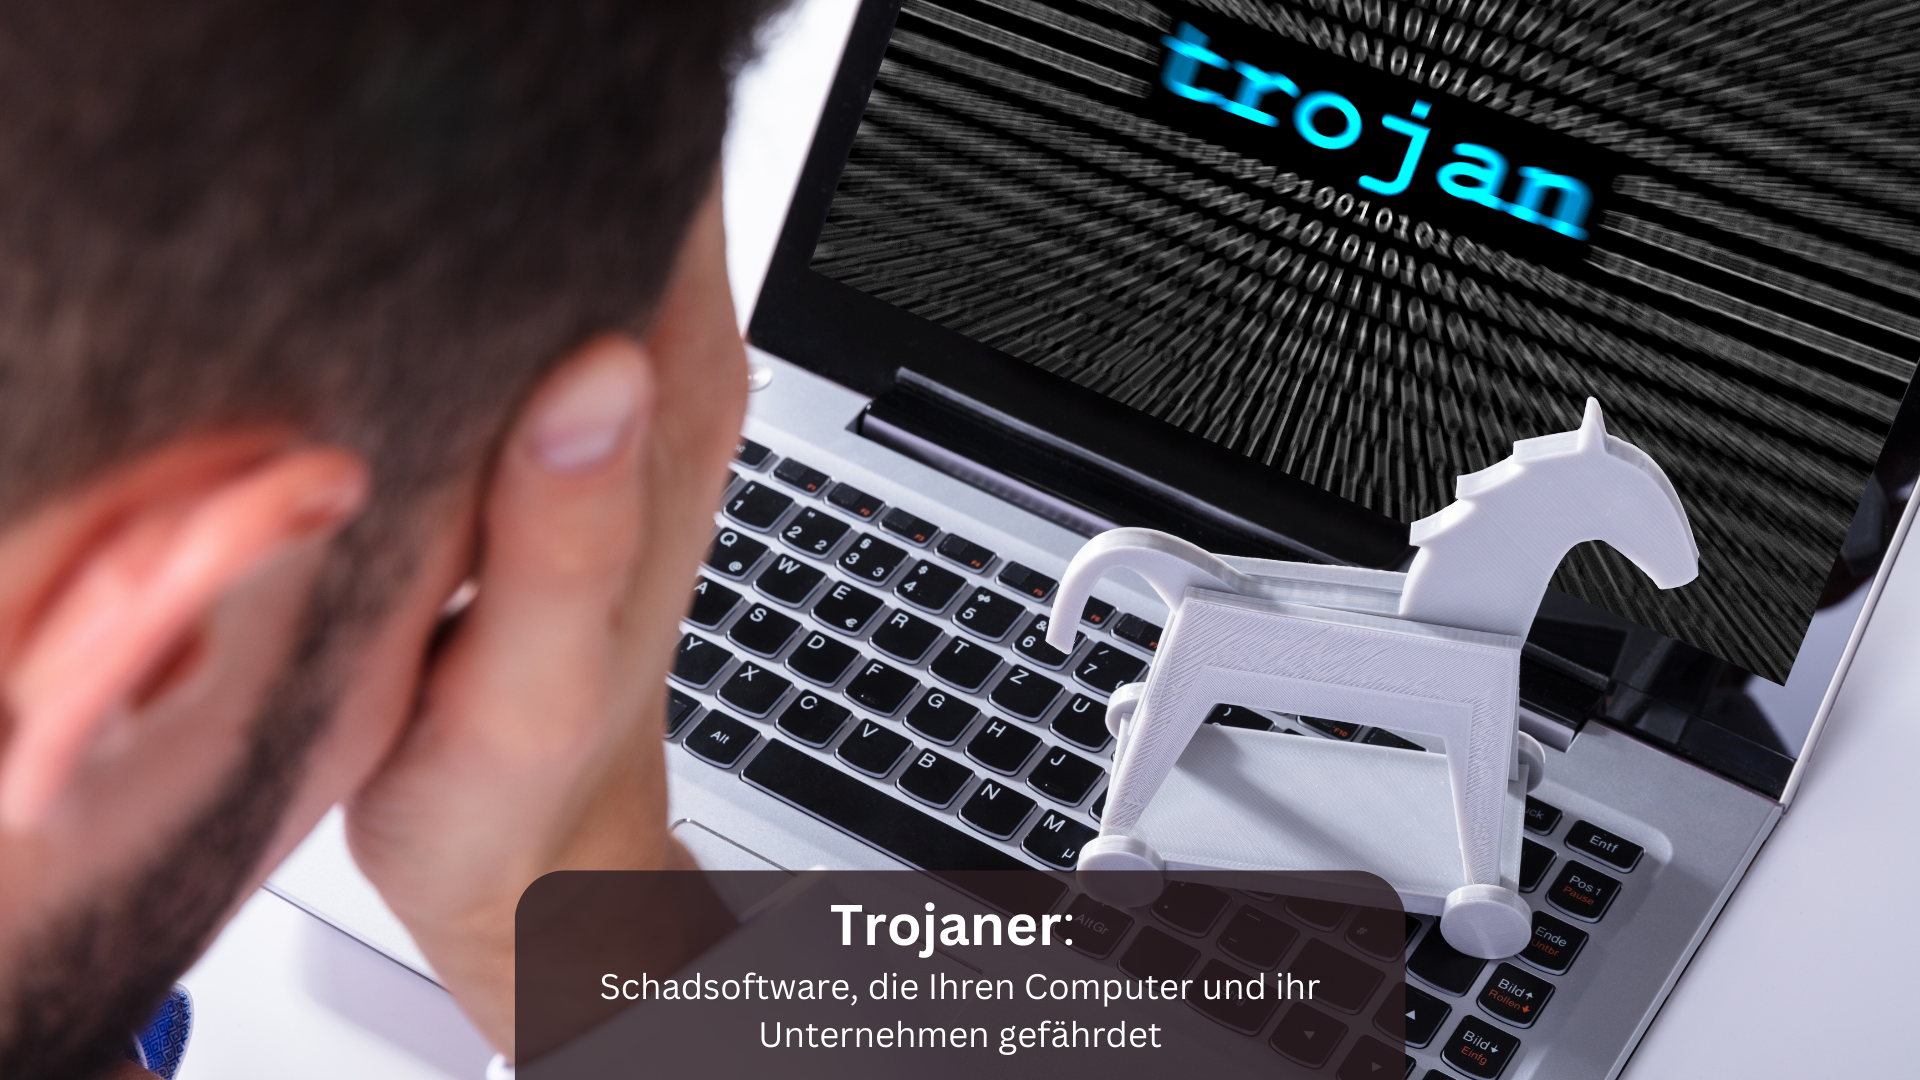 Trojaner Schadsoftware, die Ihren Computer und ihr Unternehmen gefährdet